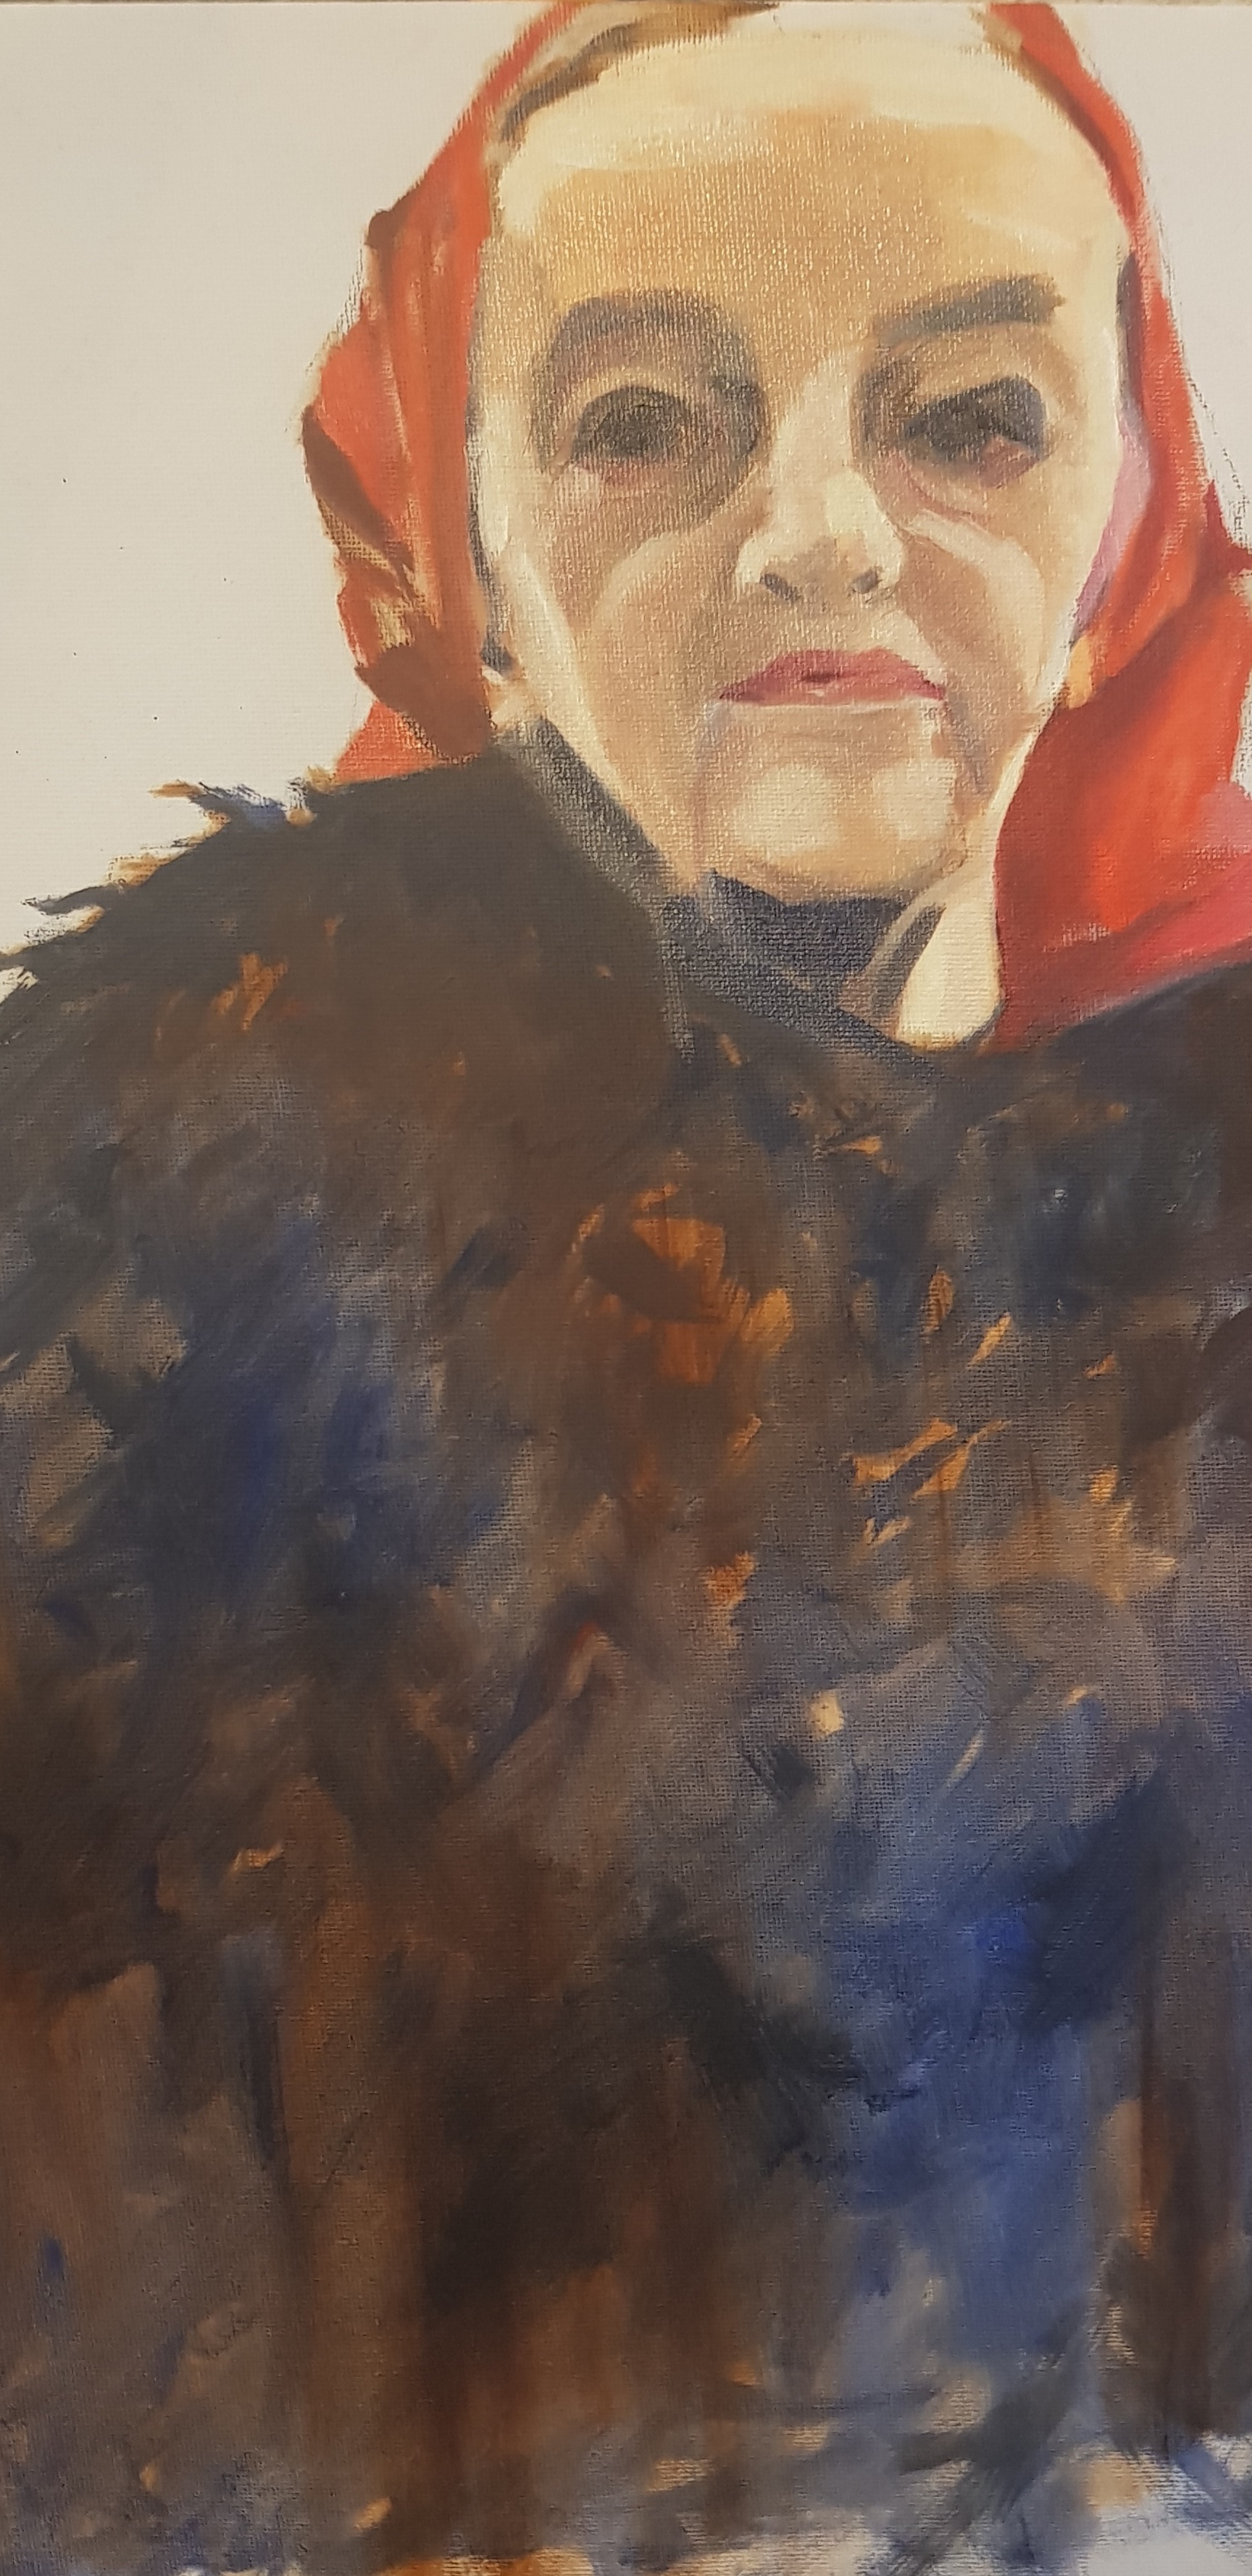 Barbara Hepworth, Oil on canvas